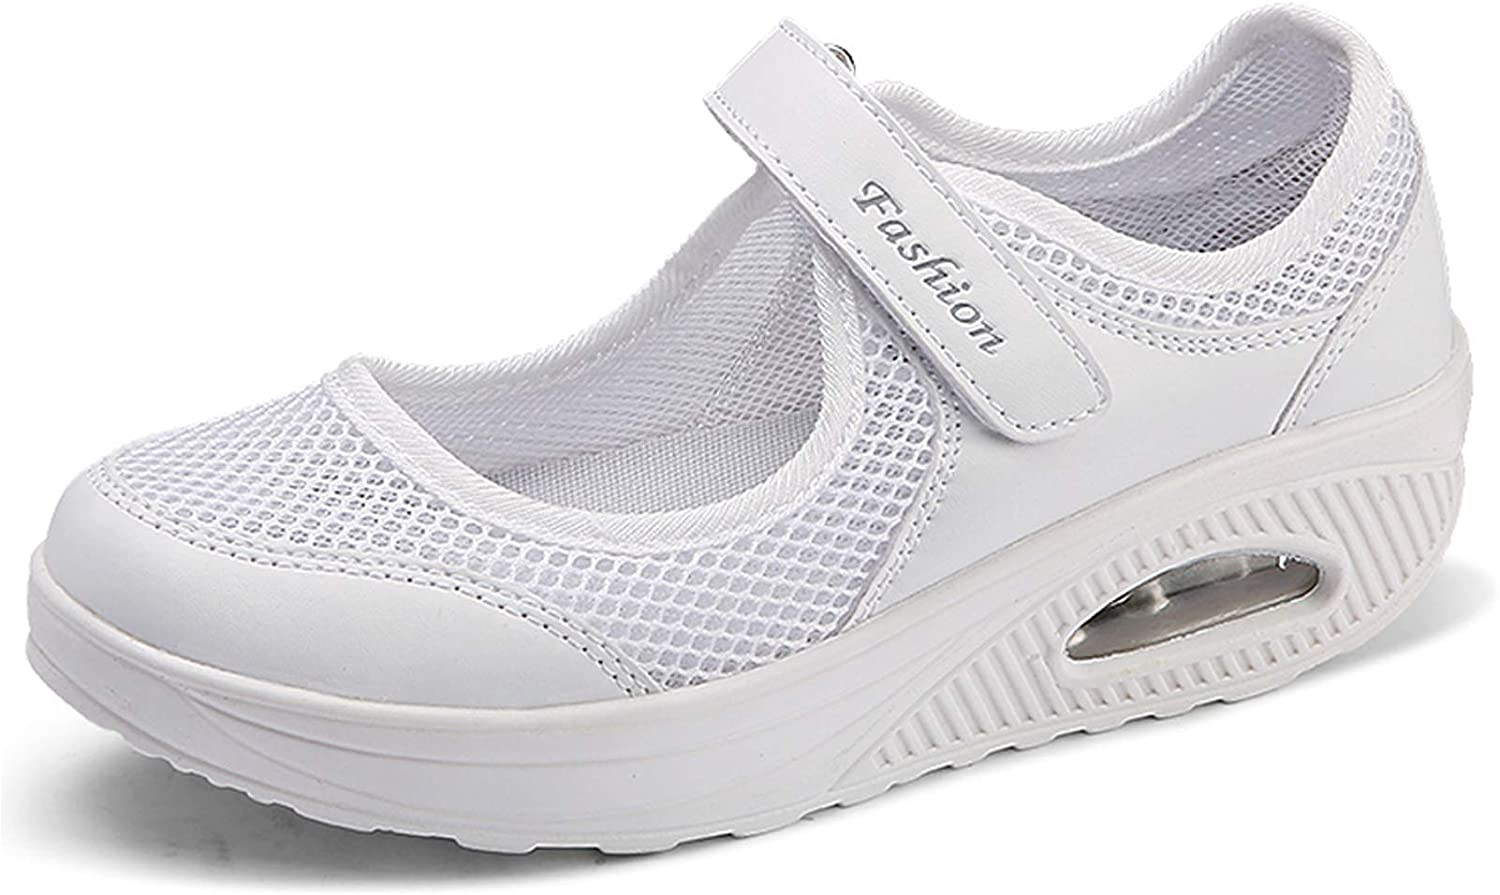 1-blanco 41 EU Hishoes Sandalias para Mujer Malla Merceditas Plataforma Ligero Zapatillas Sneaker Mary Jane Casual Zapatos de Deporte Mocasines Verano 